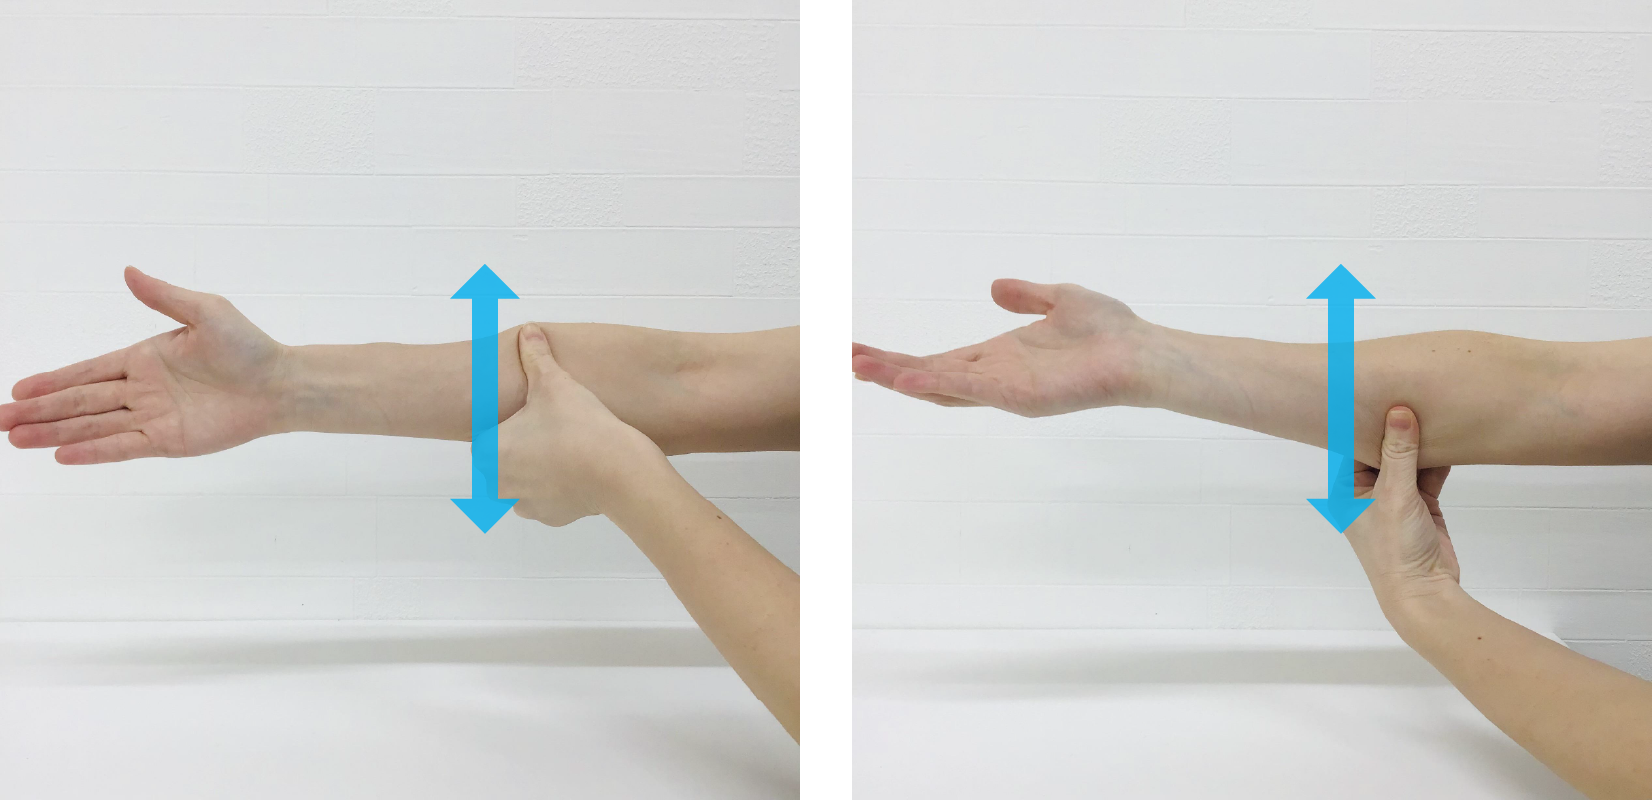 写真のように、前腕の手のひら側に反対側の親指を当てます。親指で軽く筋肉を圧迫しながら、矢印の方向に動かすようにしてマッサージします。少しずつ場所を変えながら、全体的にマッサージします。